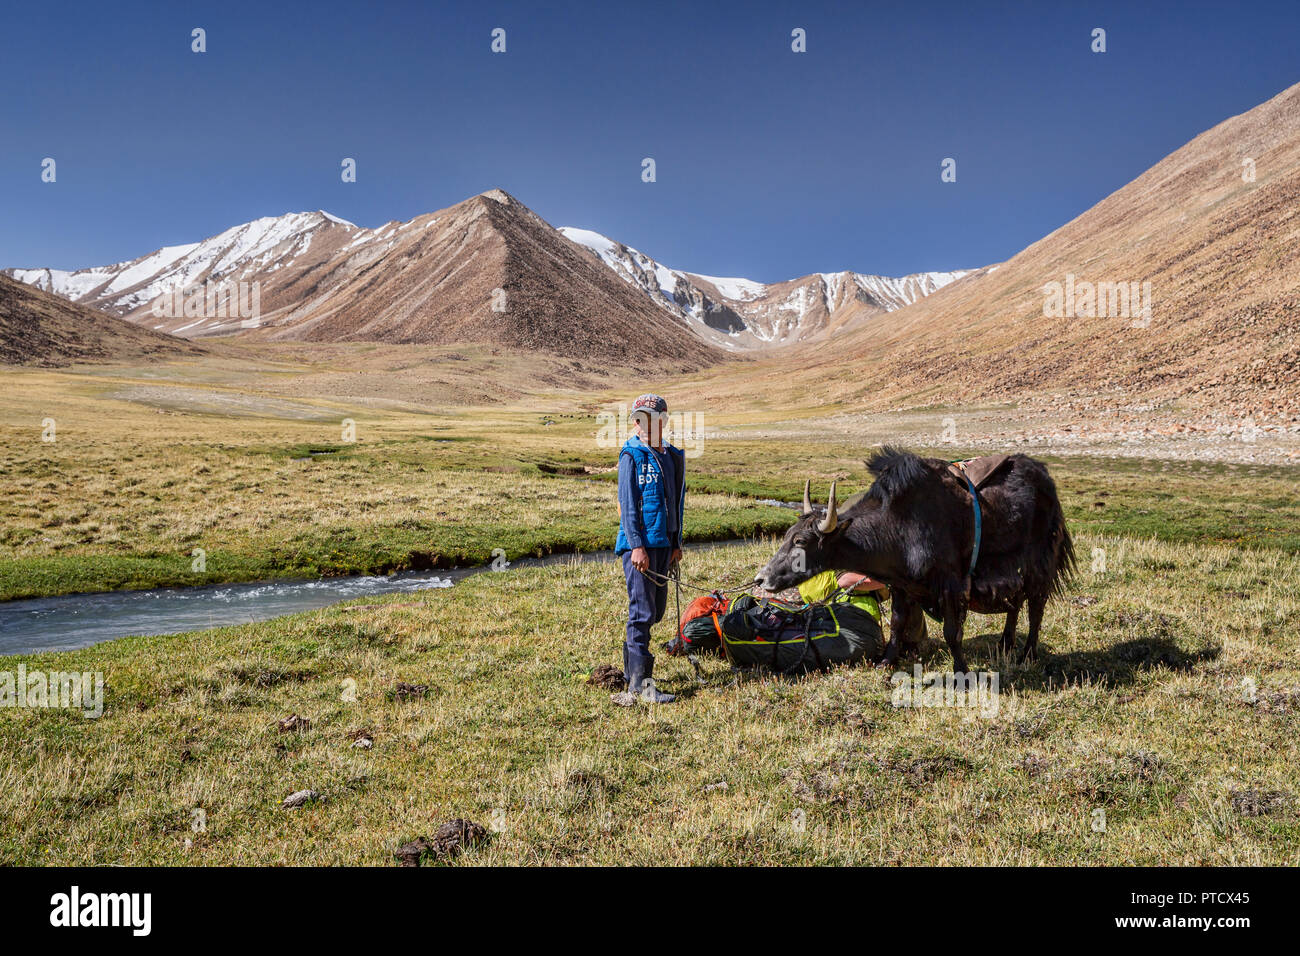 Kirgisischen Hirten in Keng Shiber mit Yak verpackt für die Expedition von Keng Shiber Kara Jilga, Pamir, Gorno-Badakhshan, Tadschikistan. Stockfoto